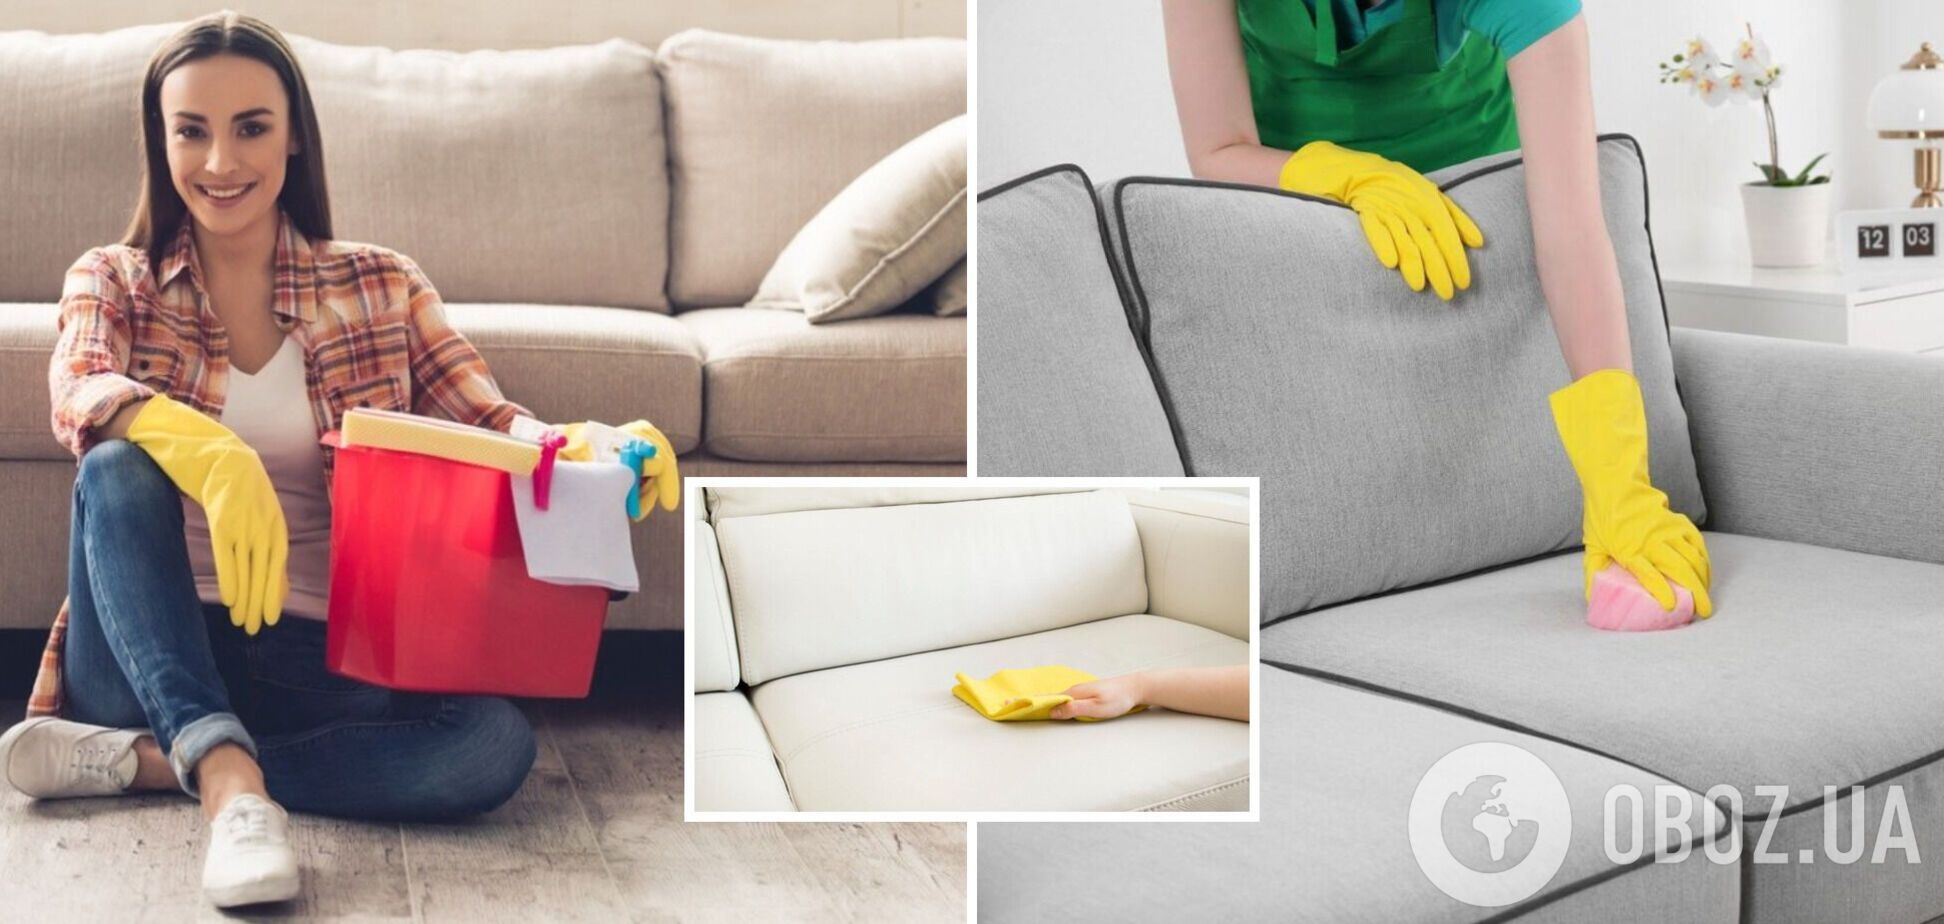 Как почистить засаленный диван: пятна исчезнут мгновенно